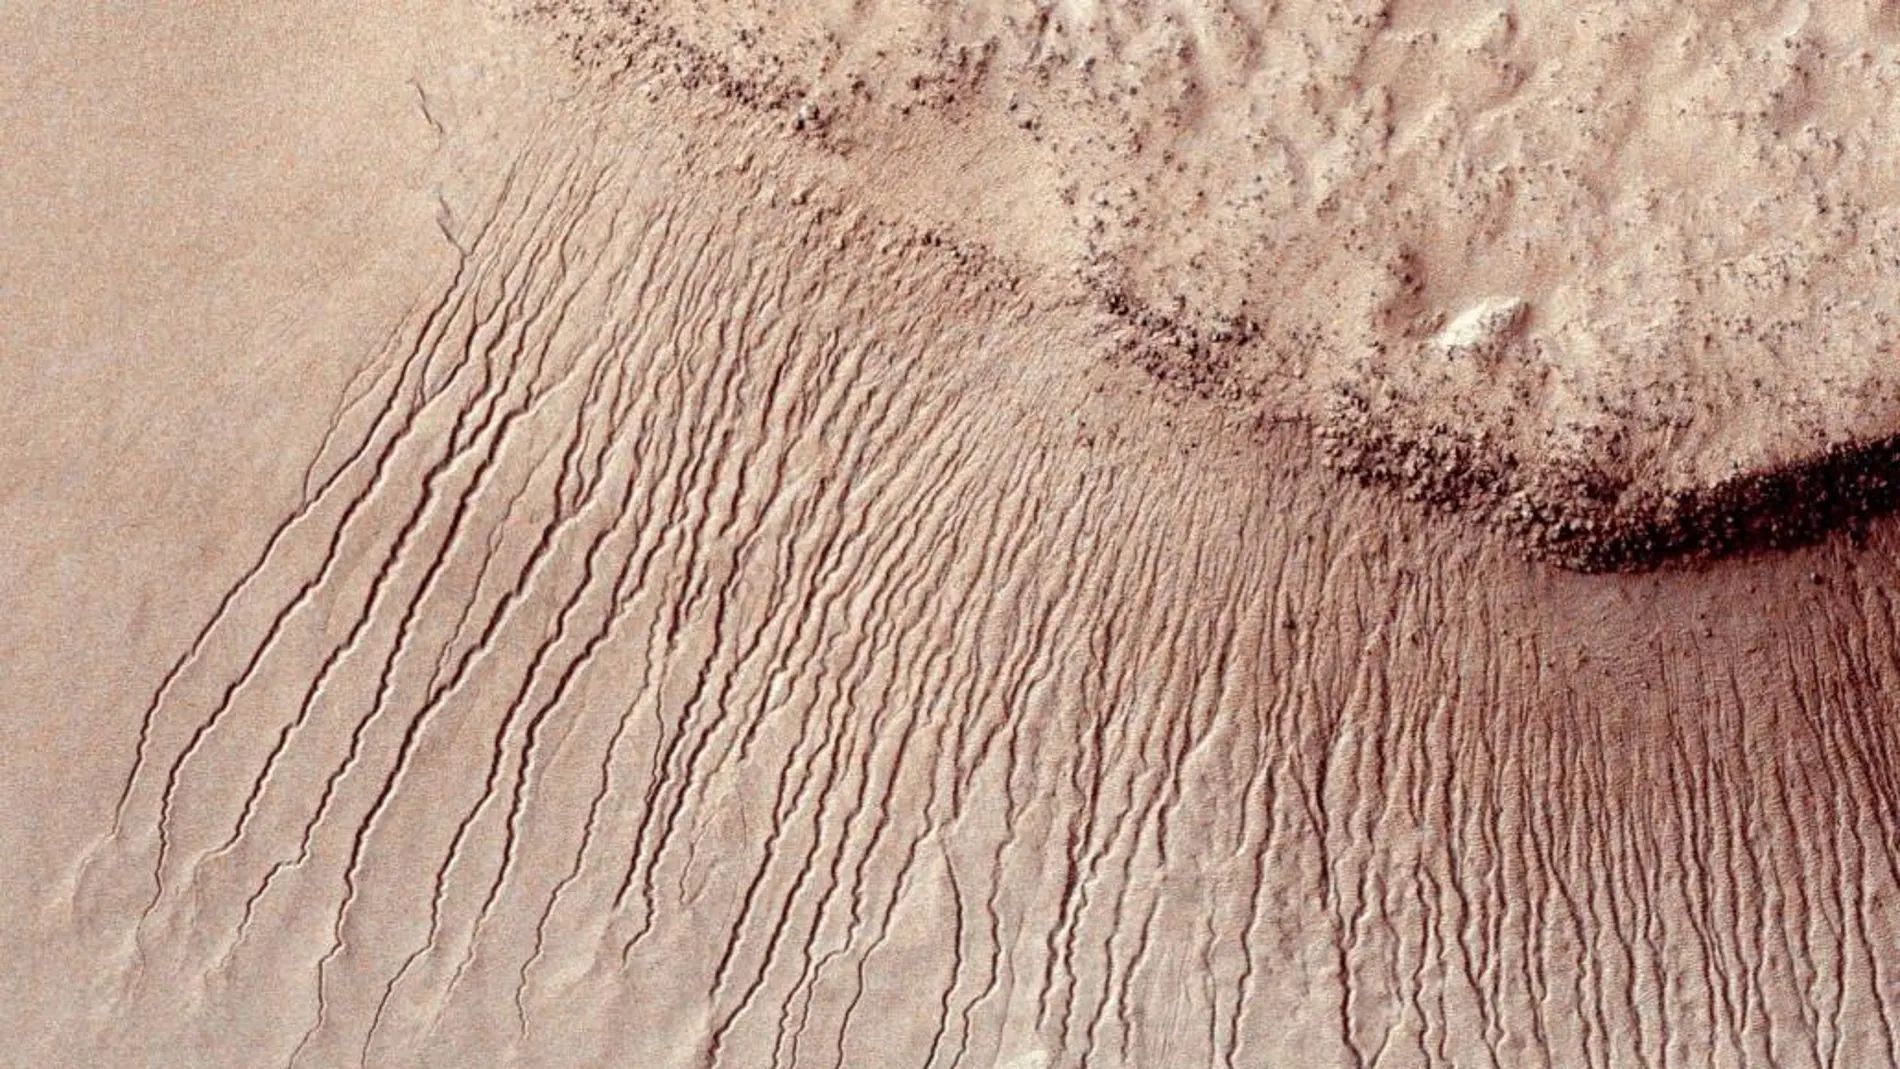 Un detalle de la superficie de Marte captada por la NASA